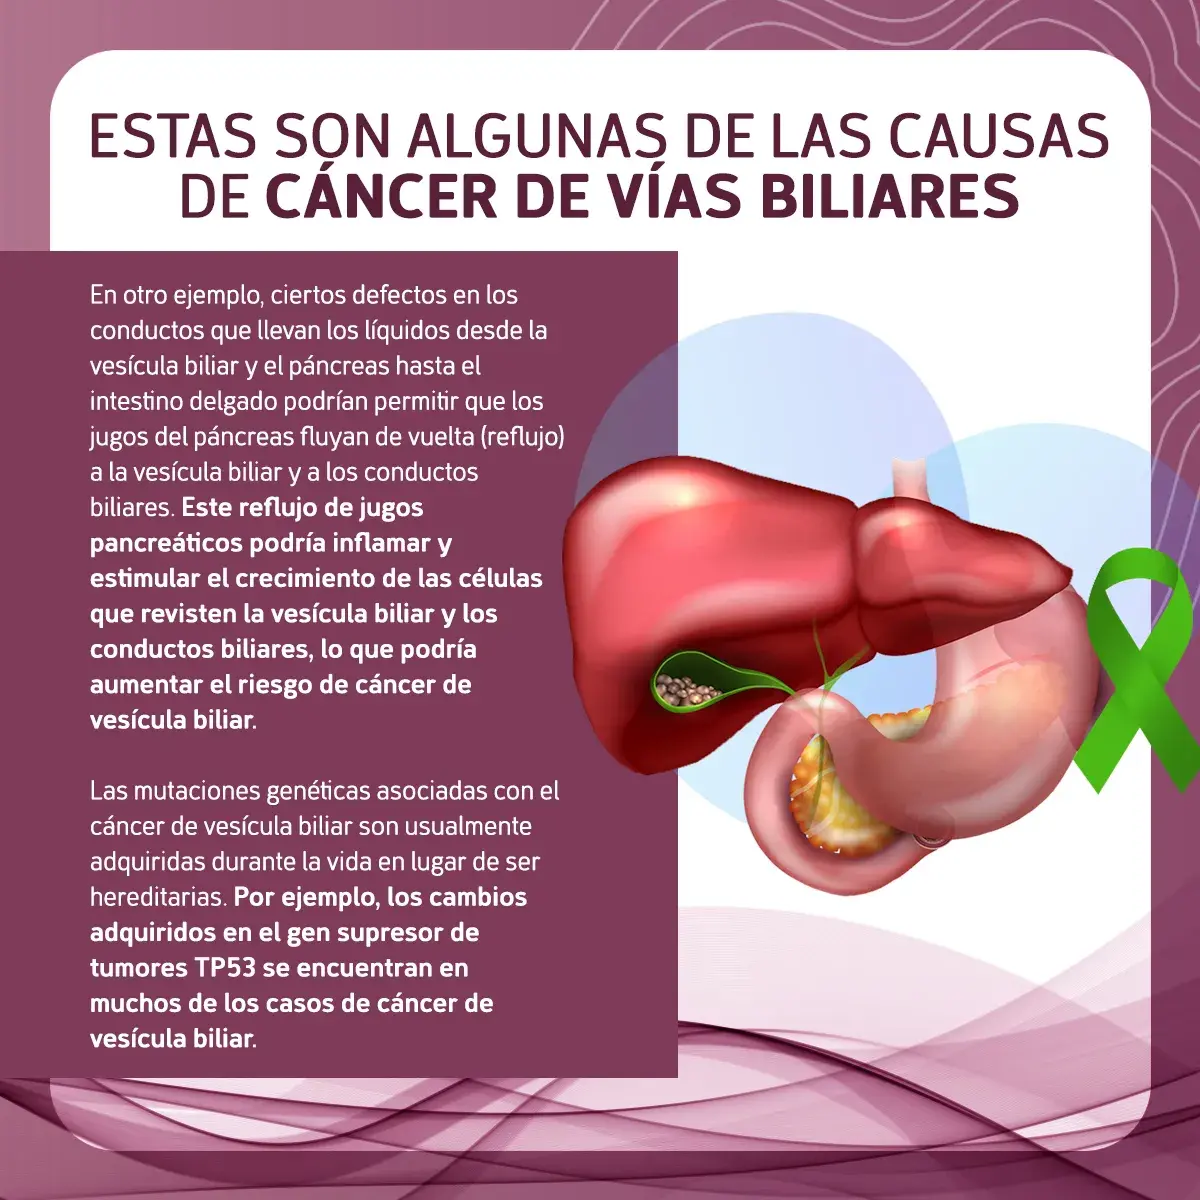 Posibles causas del cáncer de vías biliares (defectos en los conductos, mutaciones genéticas)